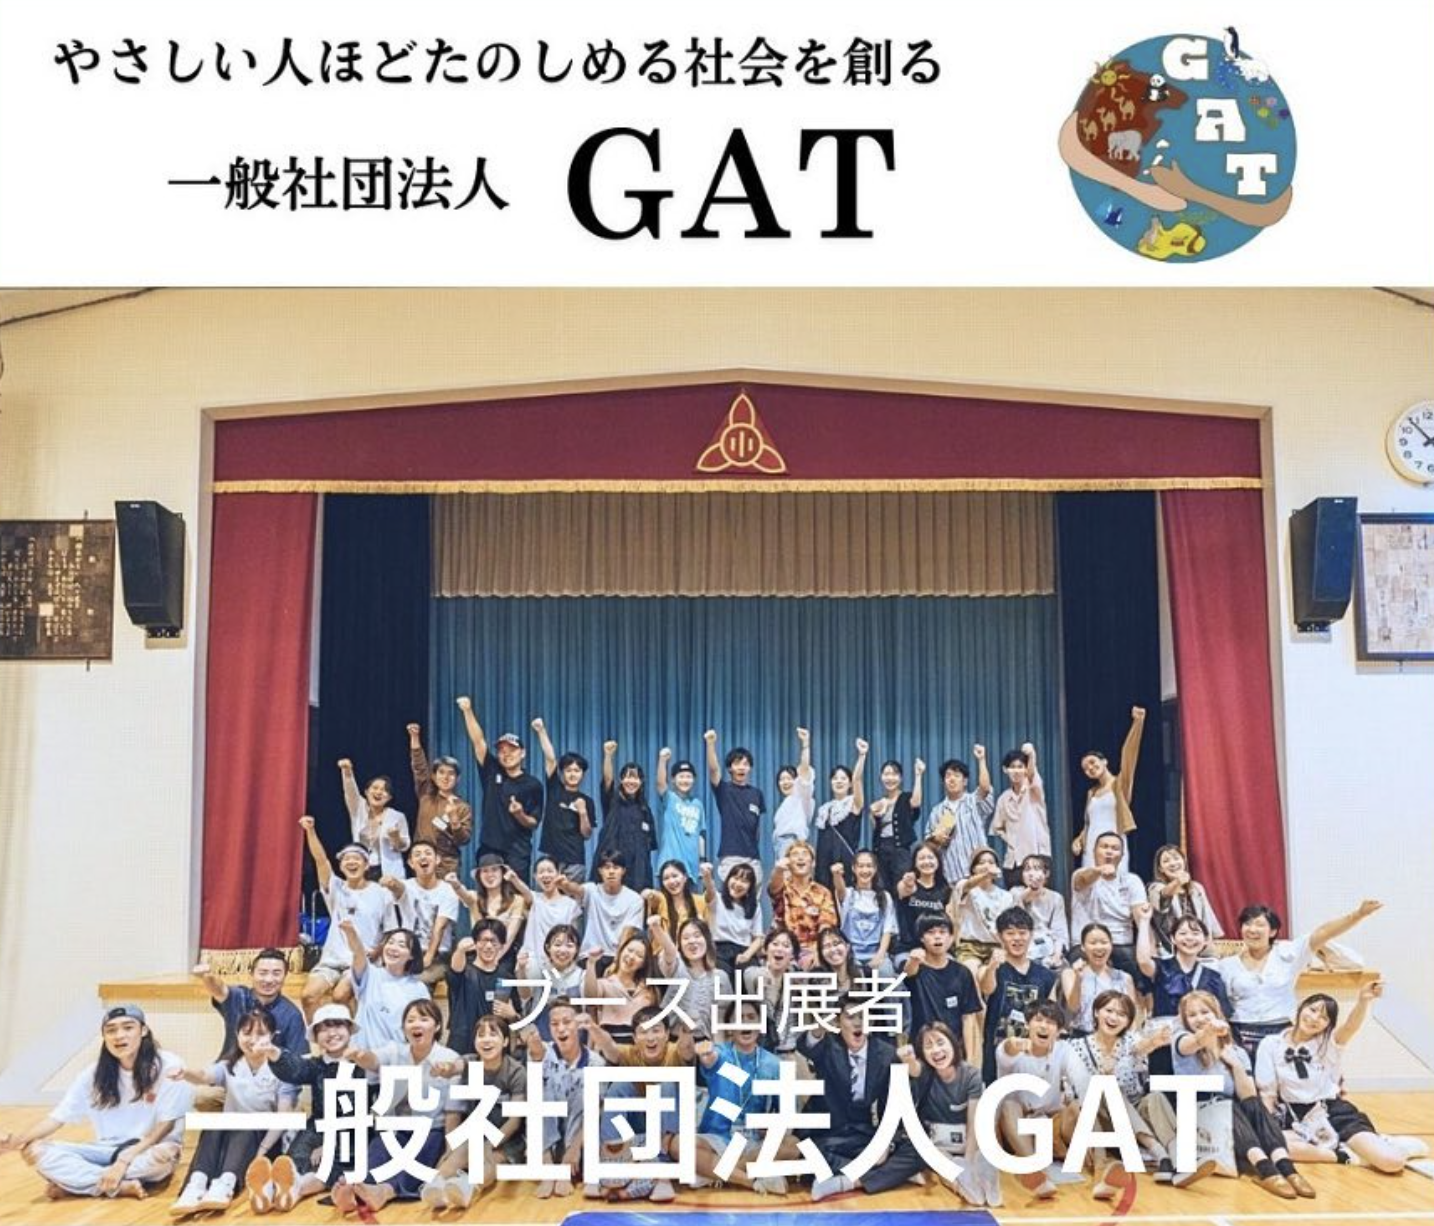 株式会社松本工務店 × GAT's image 1